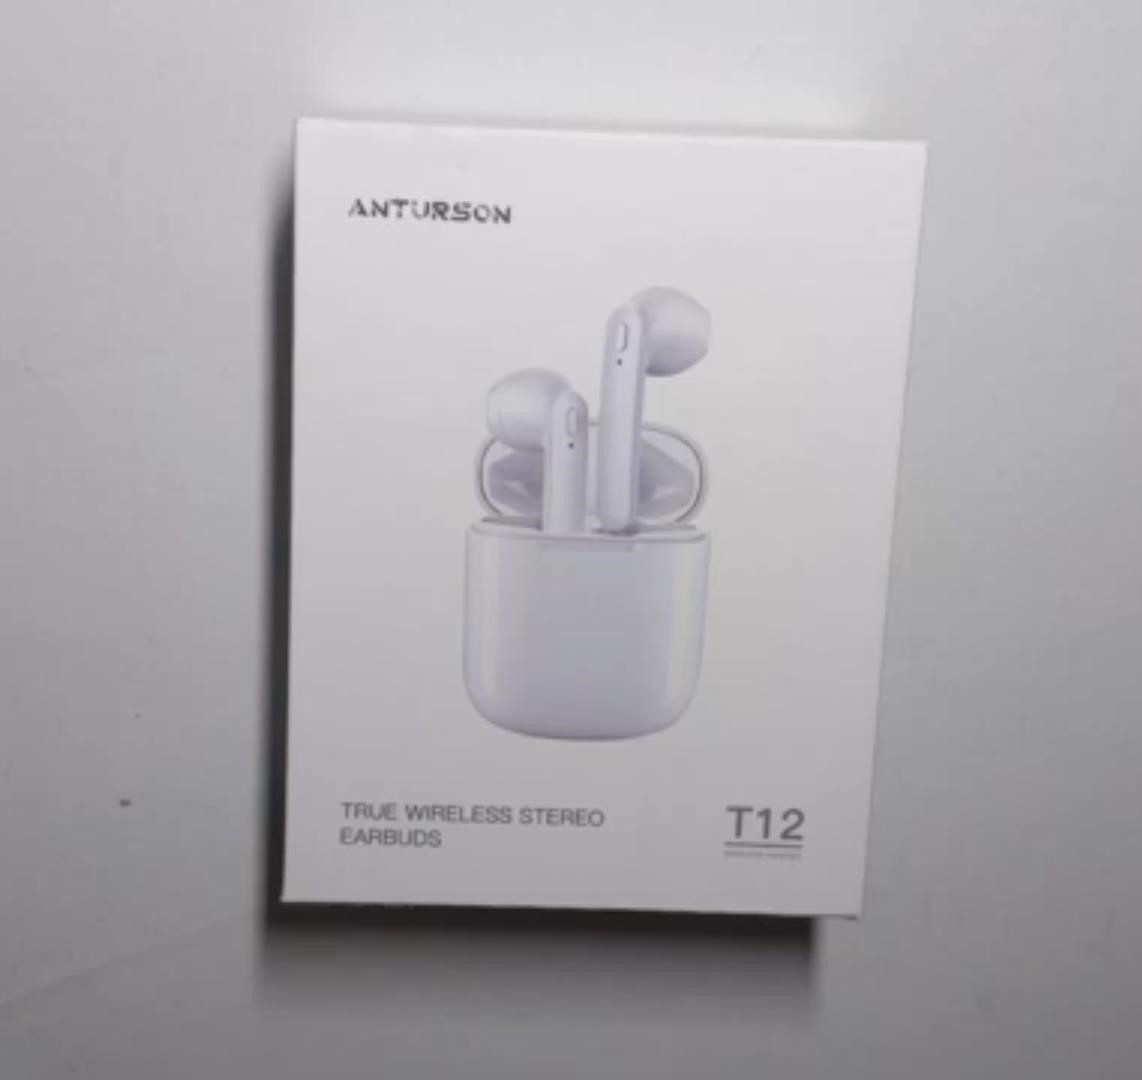 Bluetooth earbuds white T12 ANTURSON TRUE WIRELESS